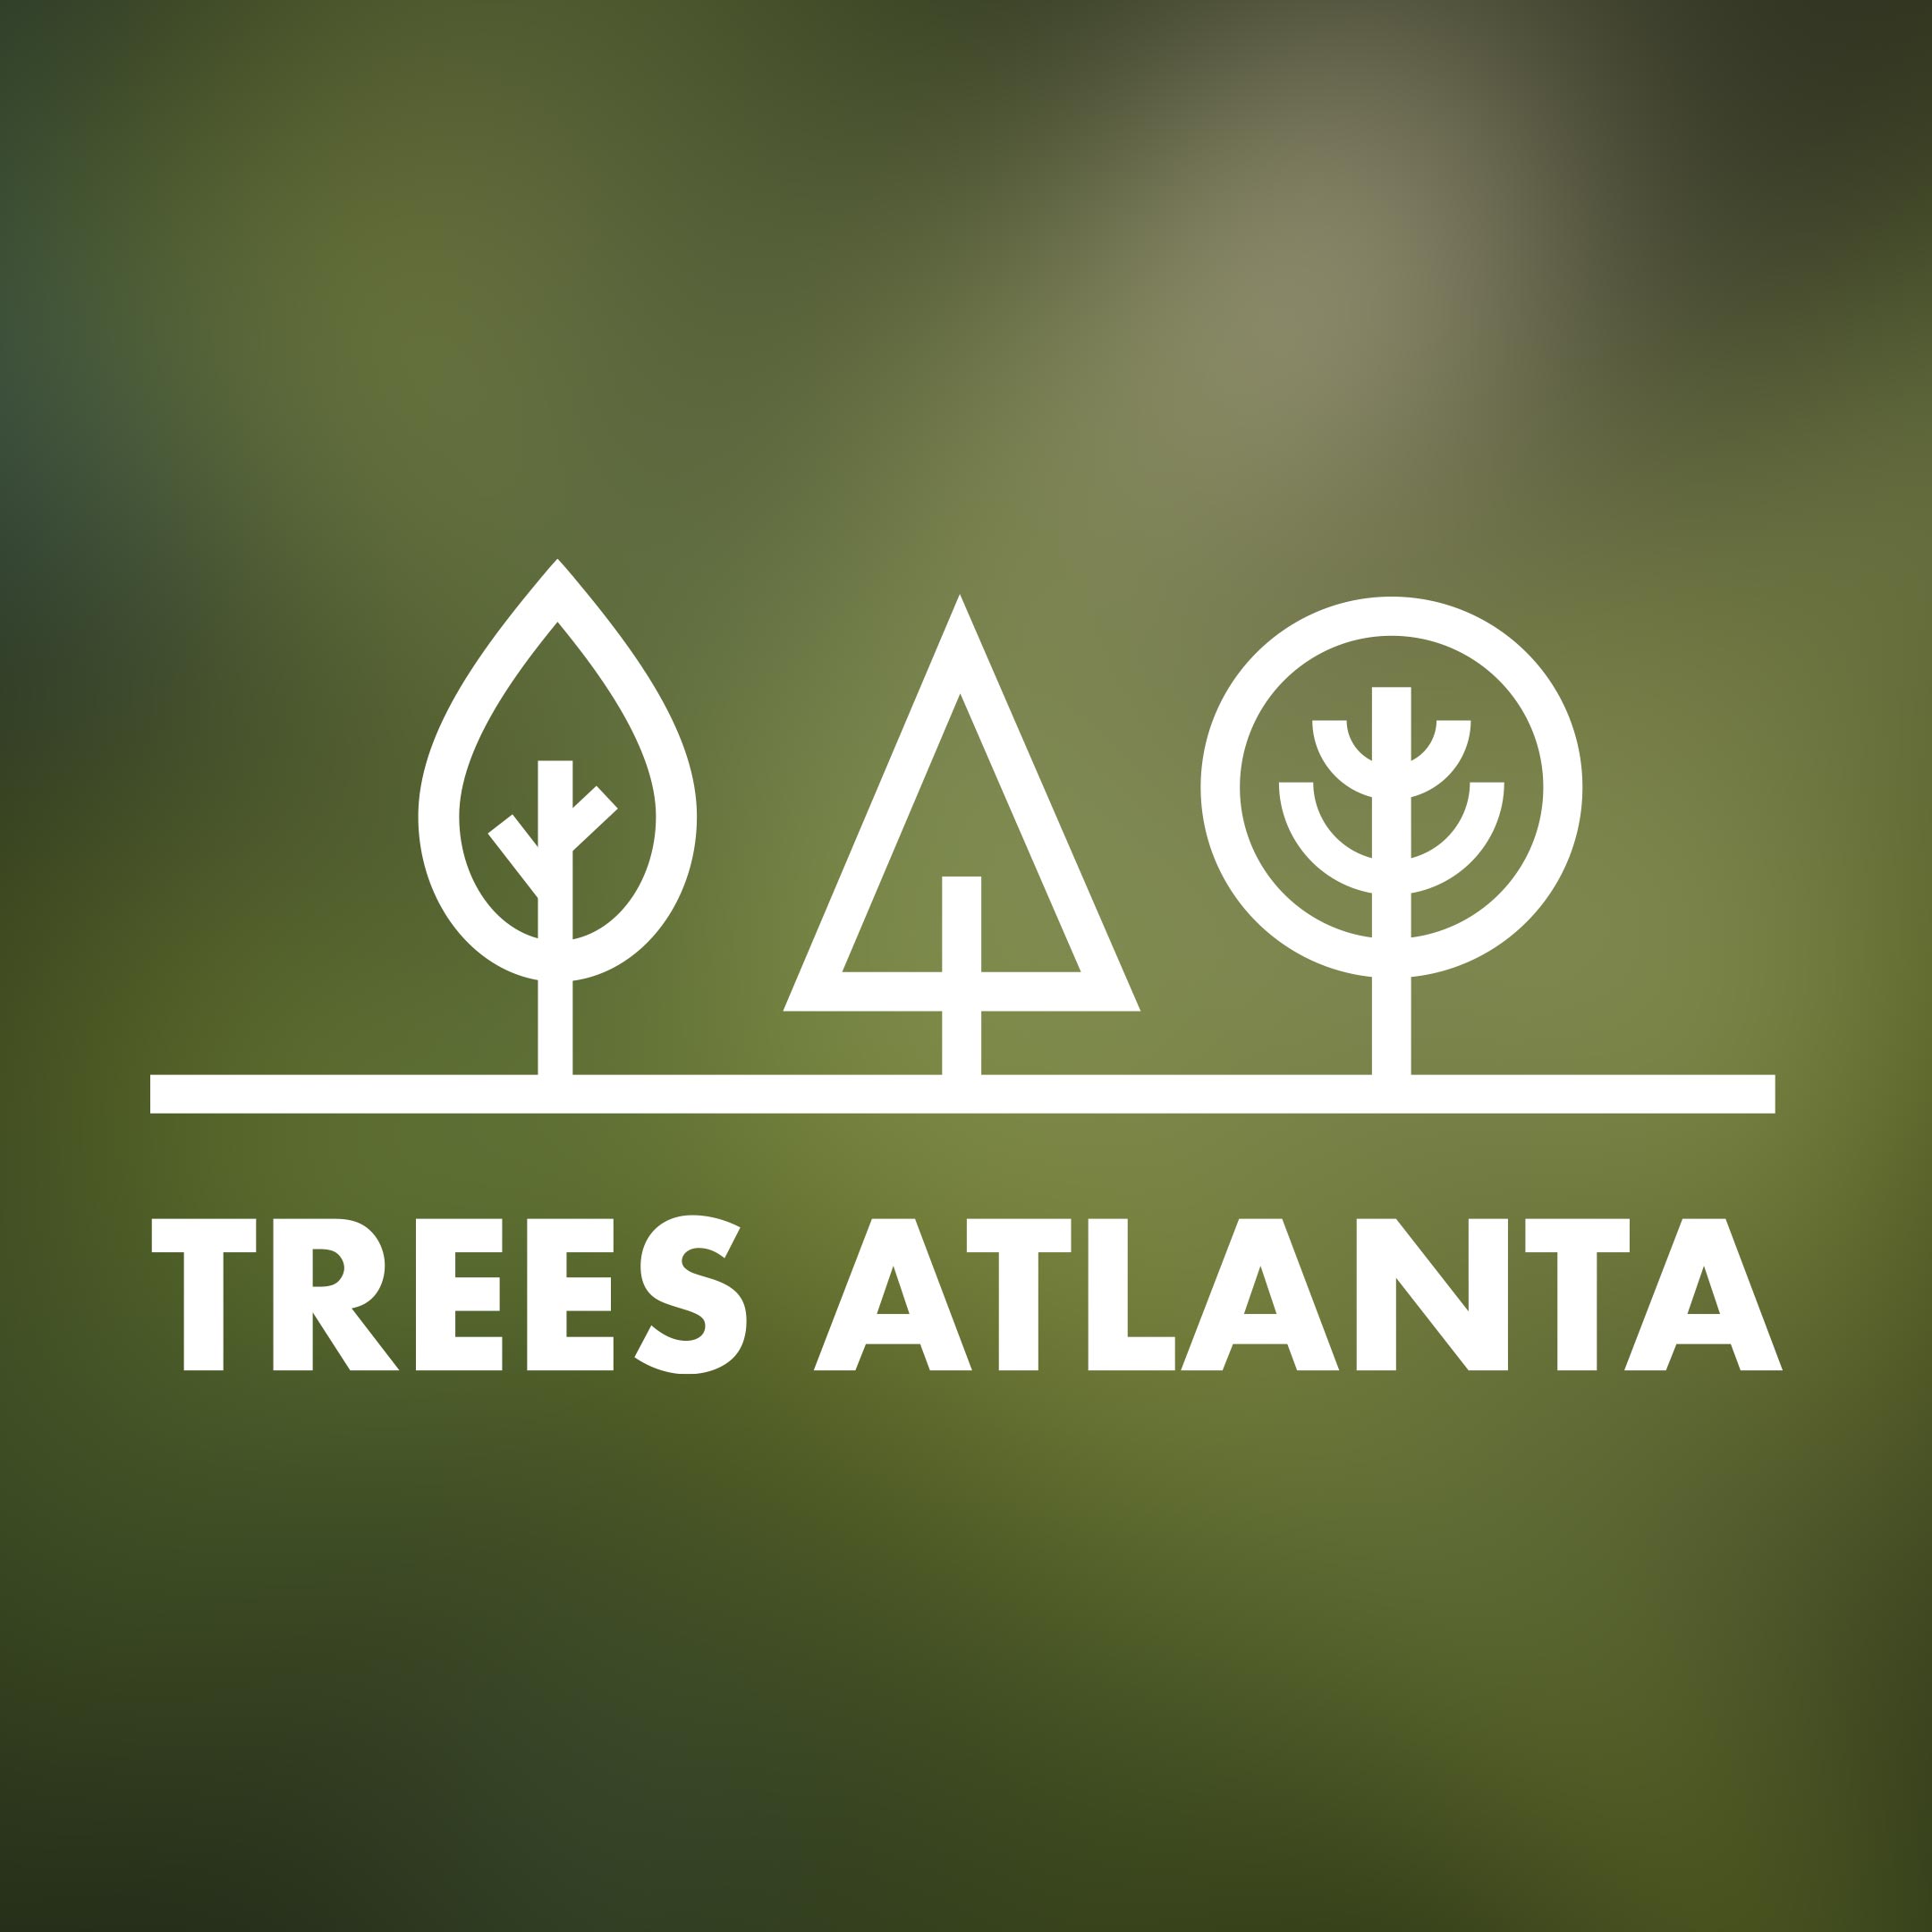 Trees Atlanta Logo